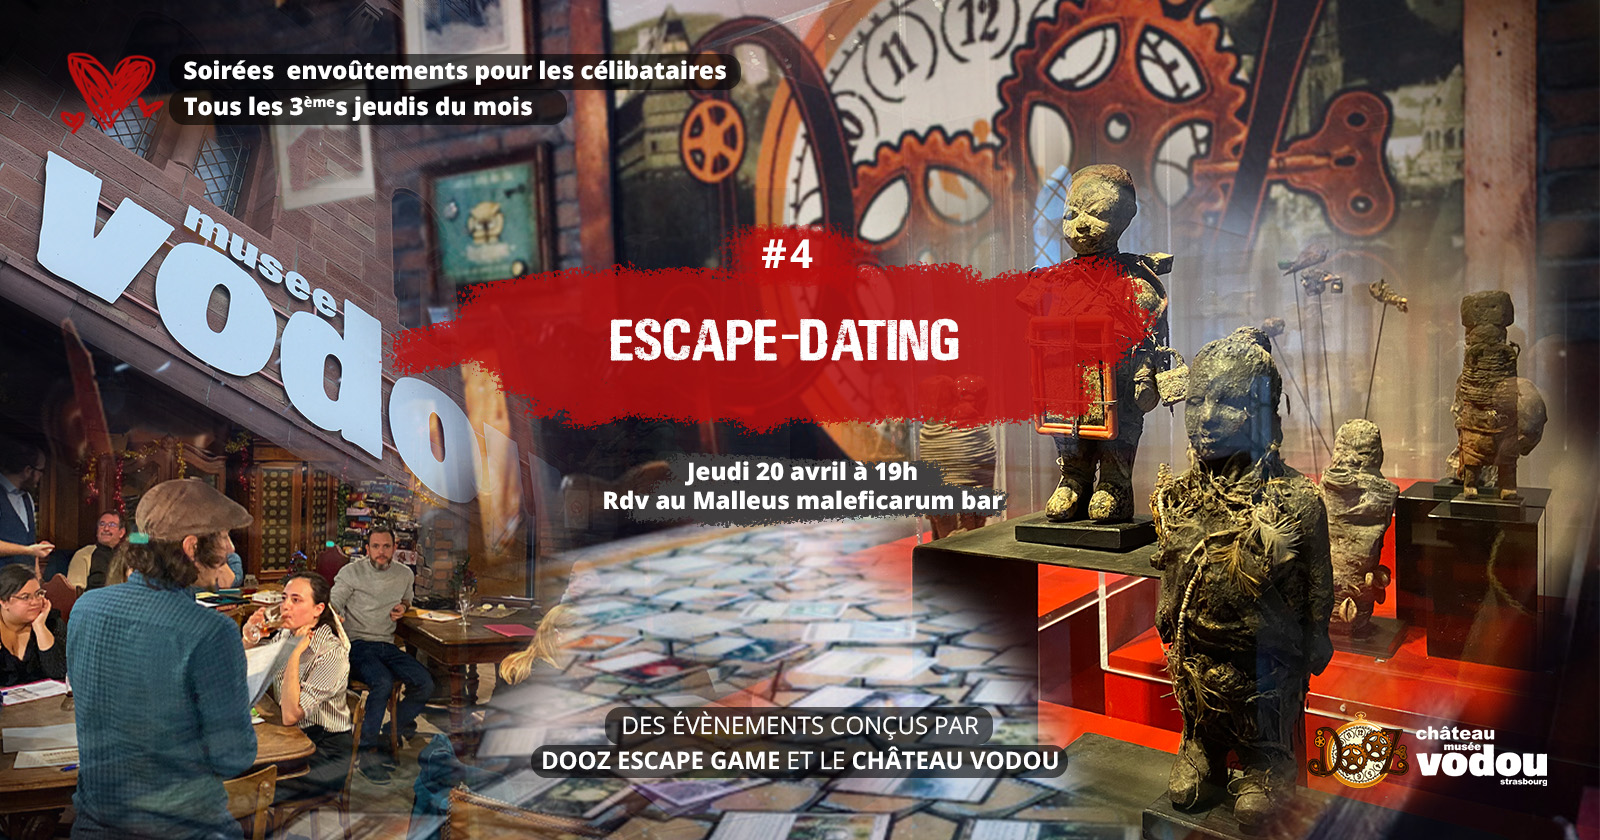 Image event - Escape Dating - Soirée envoûtement #4, réservée aux célibataires